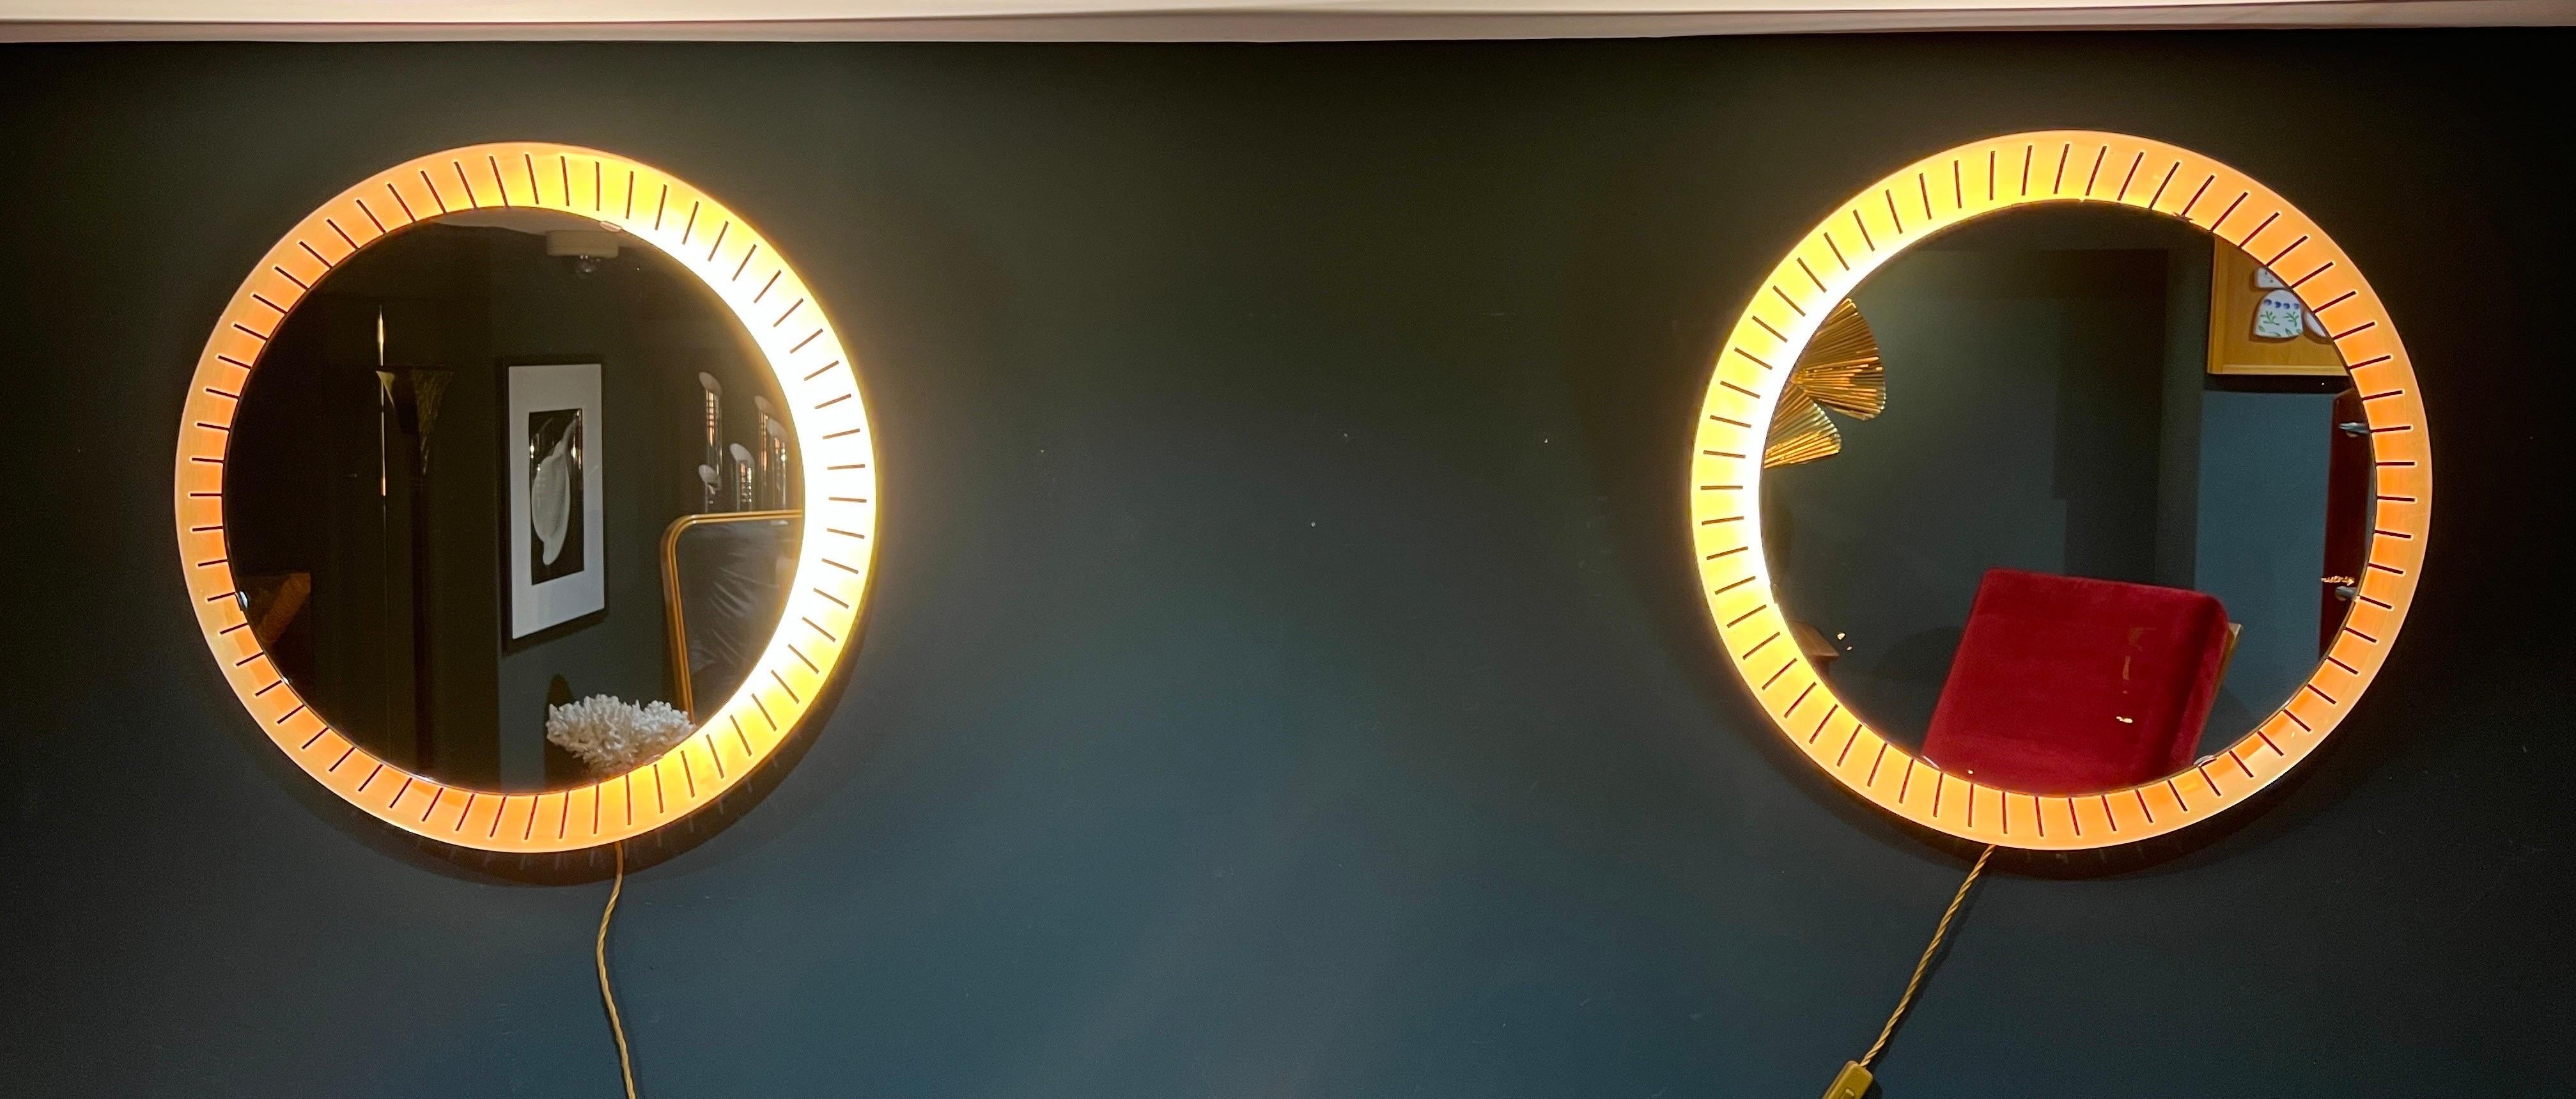 Une fantastique paire de miroirs rétro-éclairés en laiton, récemment recâblés avec des bandes de LED à gradation chaude. Ces objets sont parfaits pour les chambres à coucher, les salles de bains ou simplement pour les appliques murales. 
Produit en